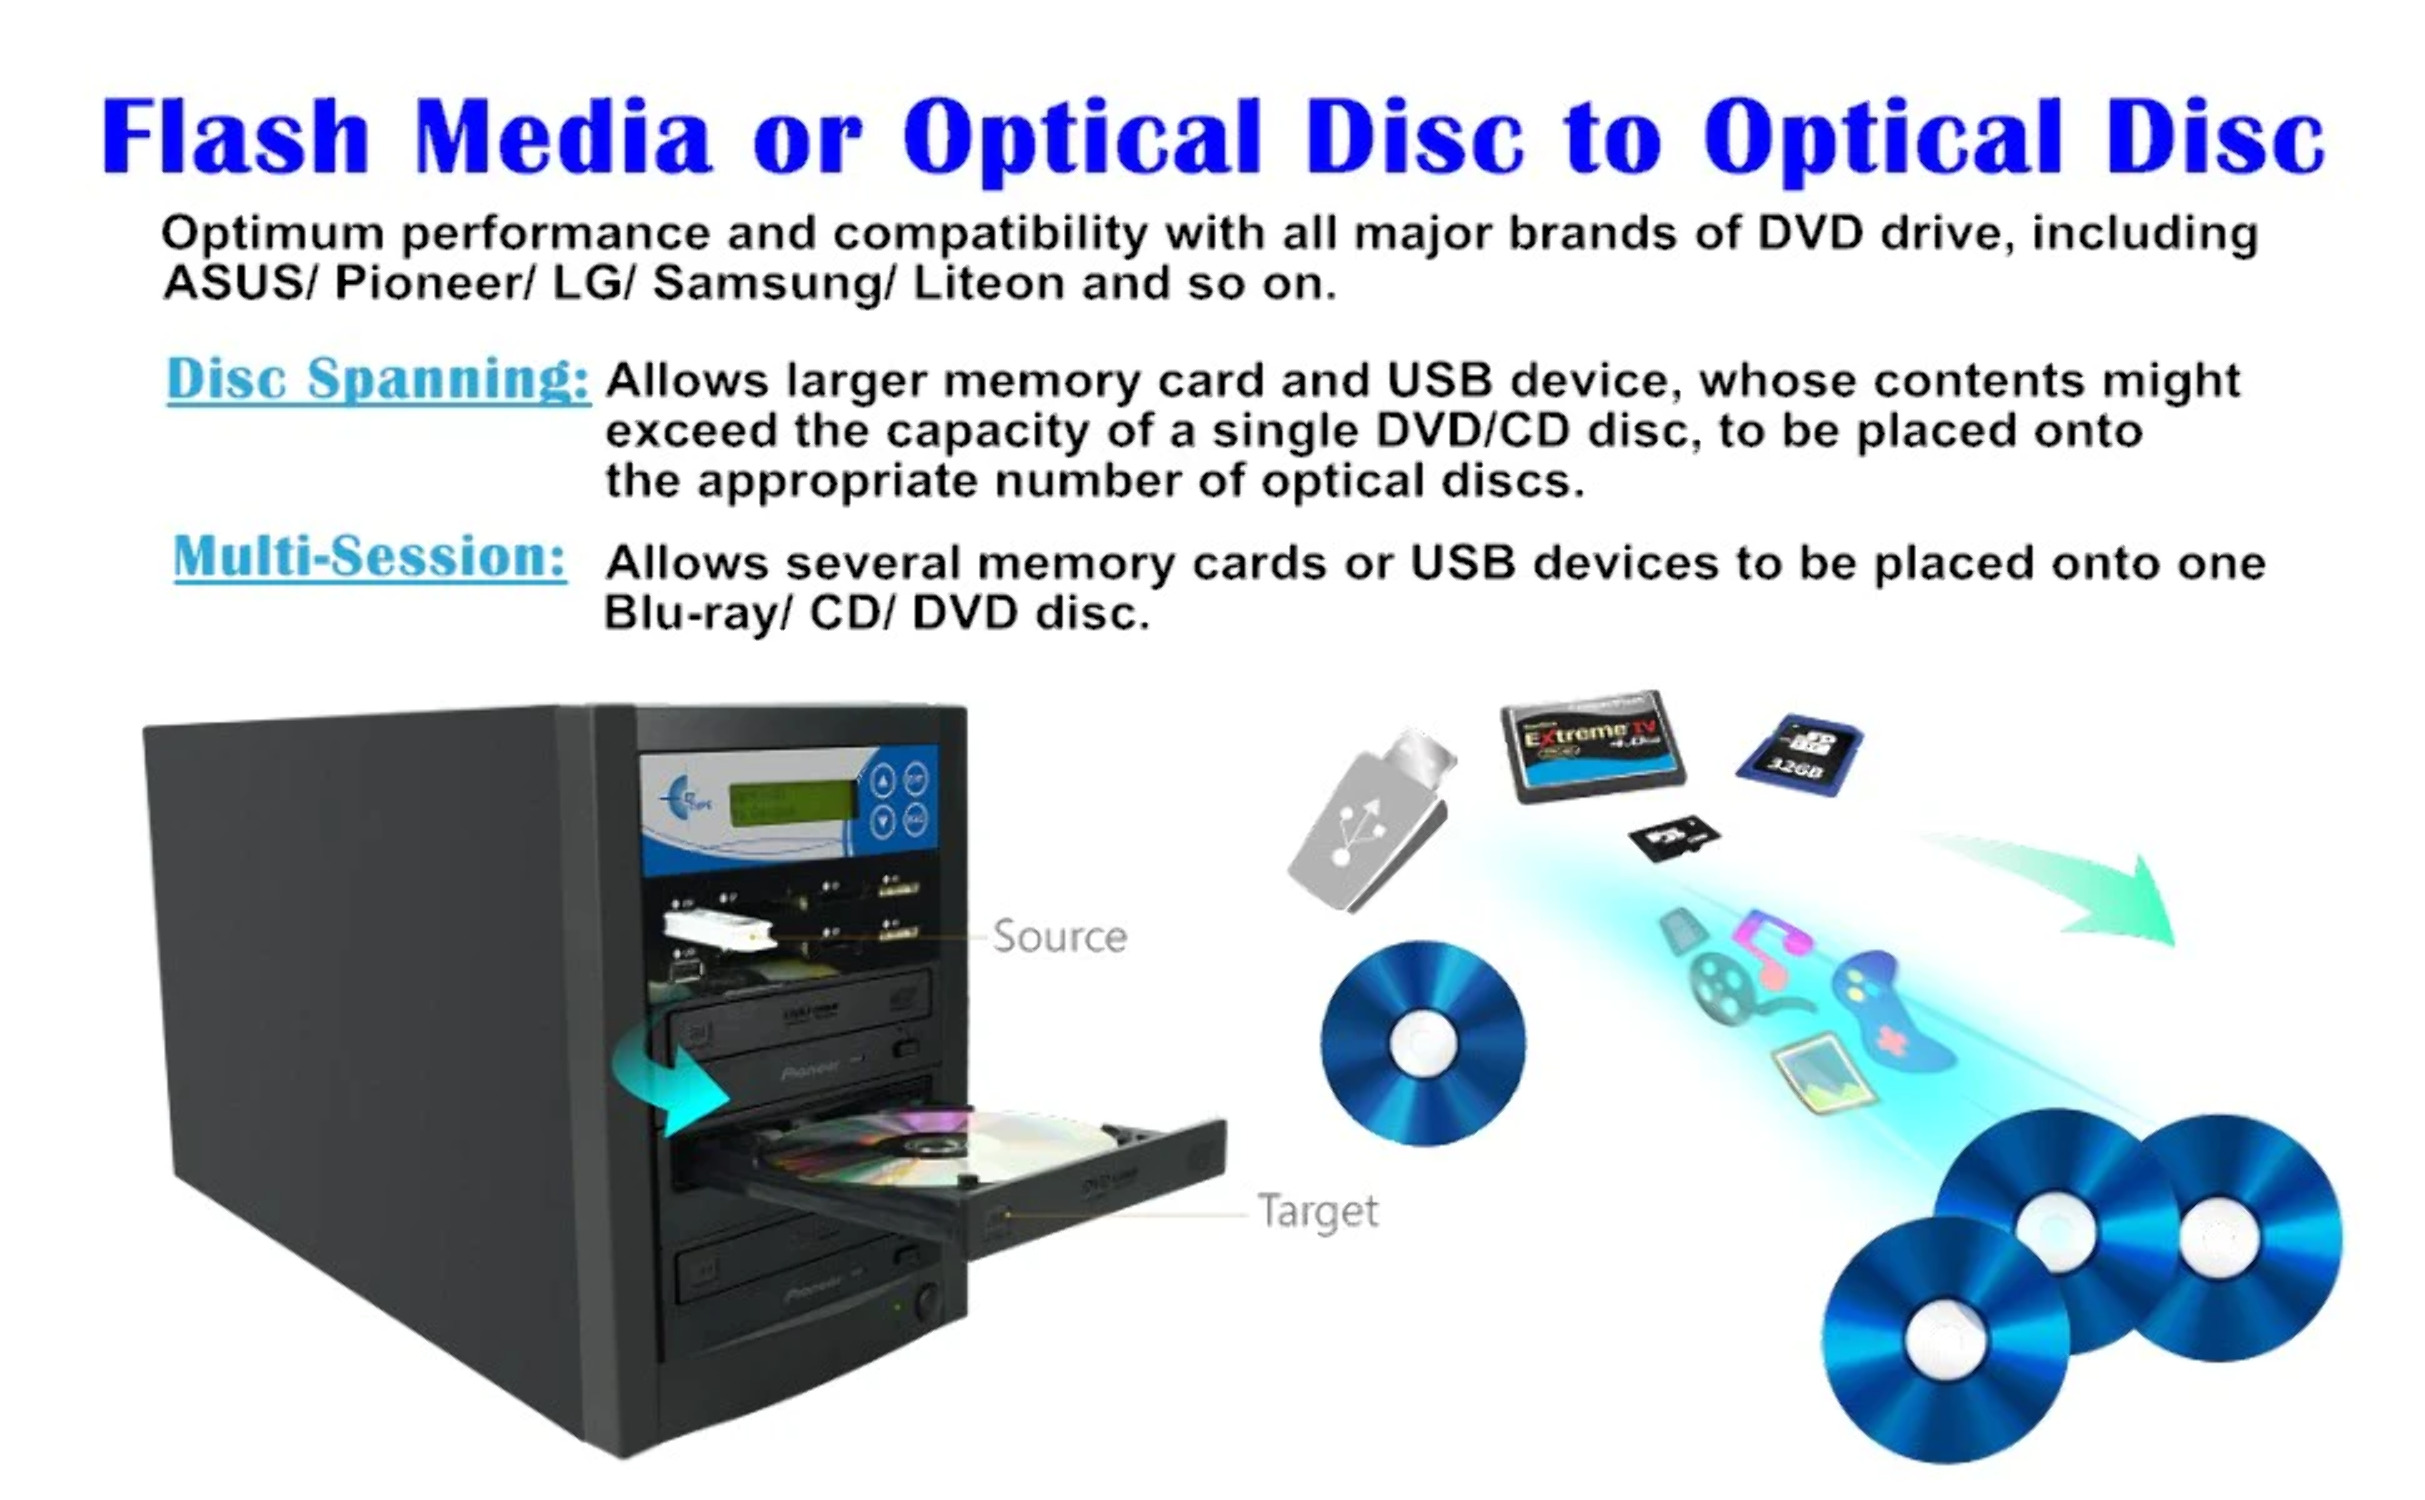 EZ Dupe Media Mirror Plus Duplicator - Flash Media & 1 to 10 Discs Copier - image 2 of 5